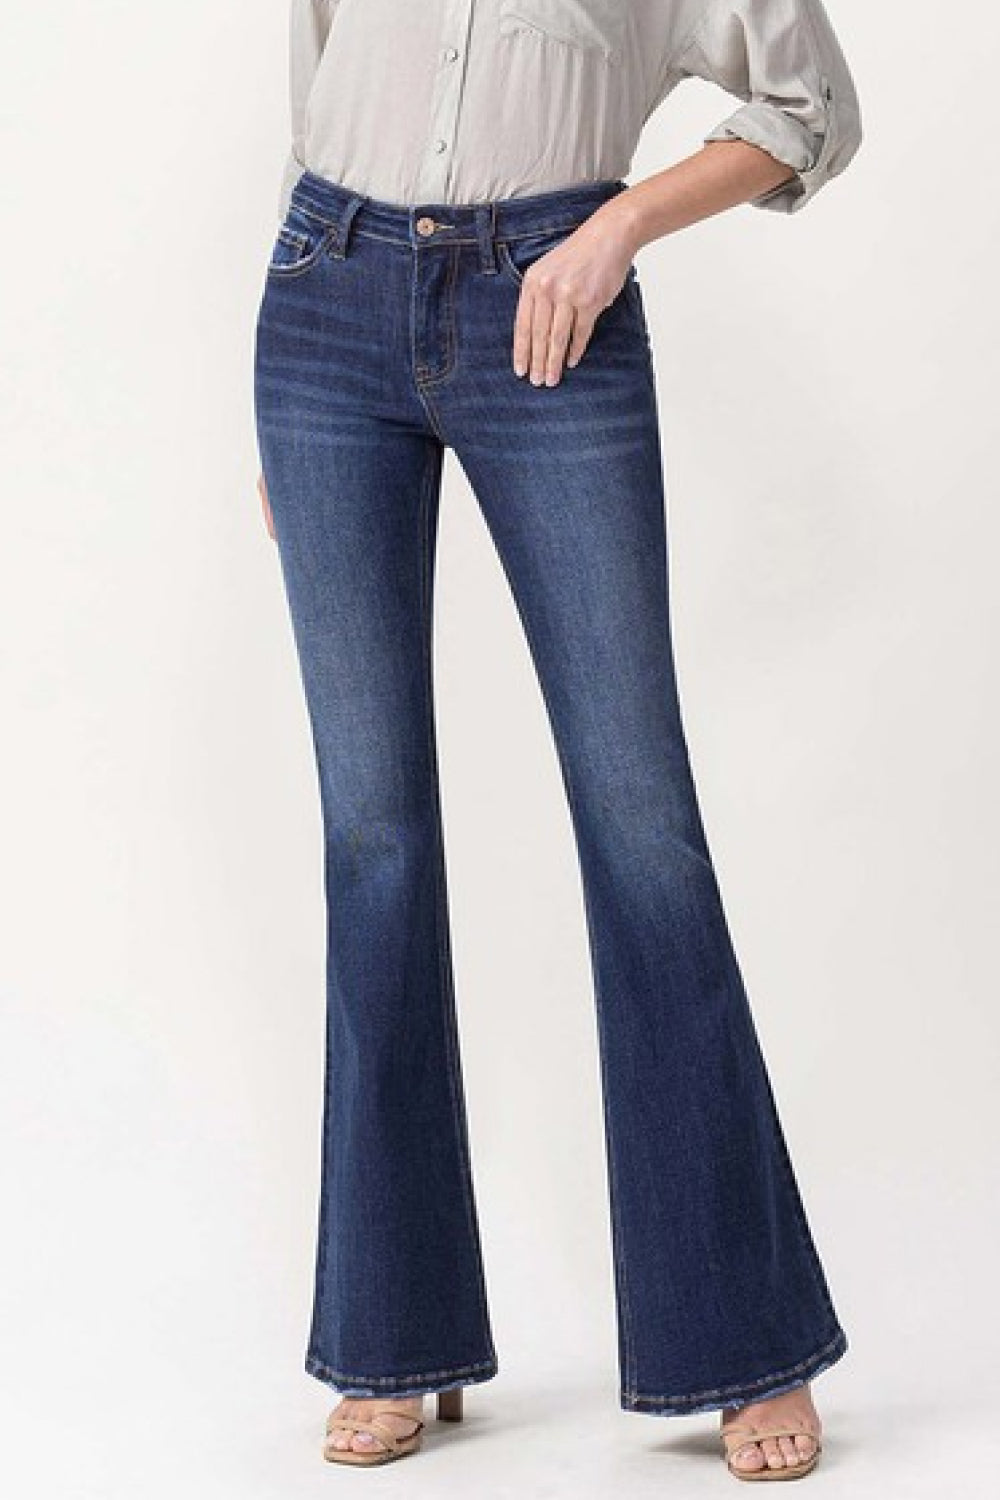 Lovervet by VERVET Full Size Joanna Mid Rise Flare Jeans